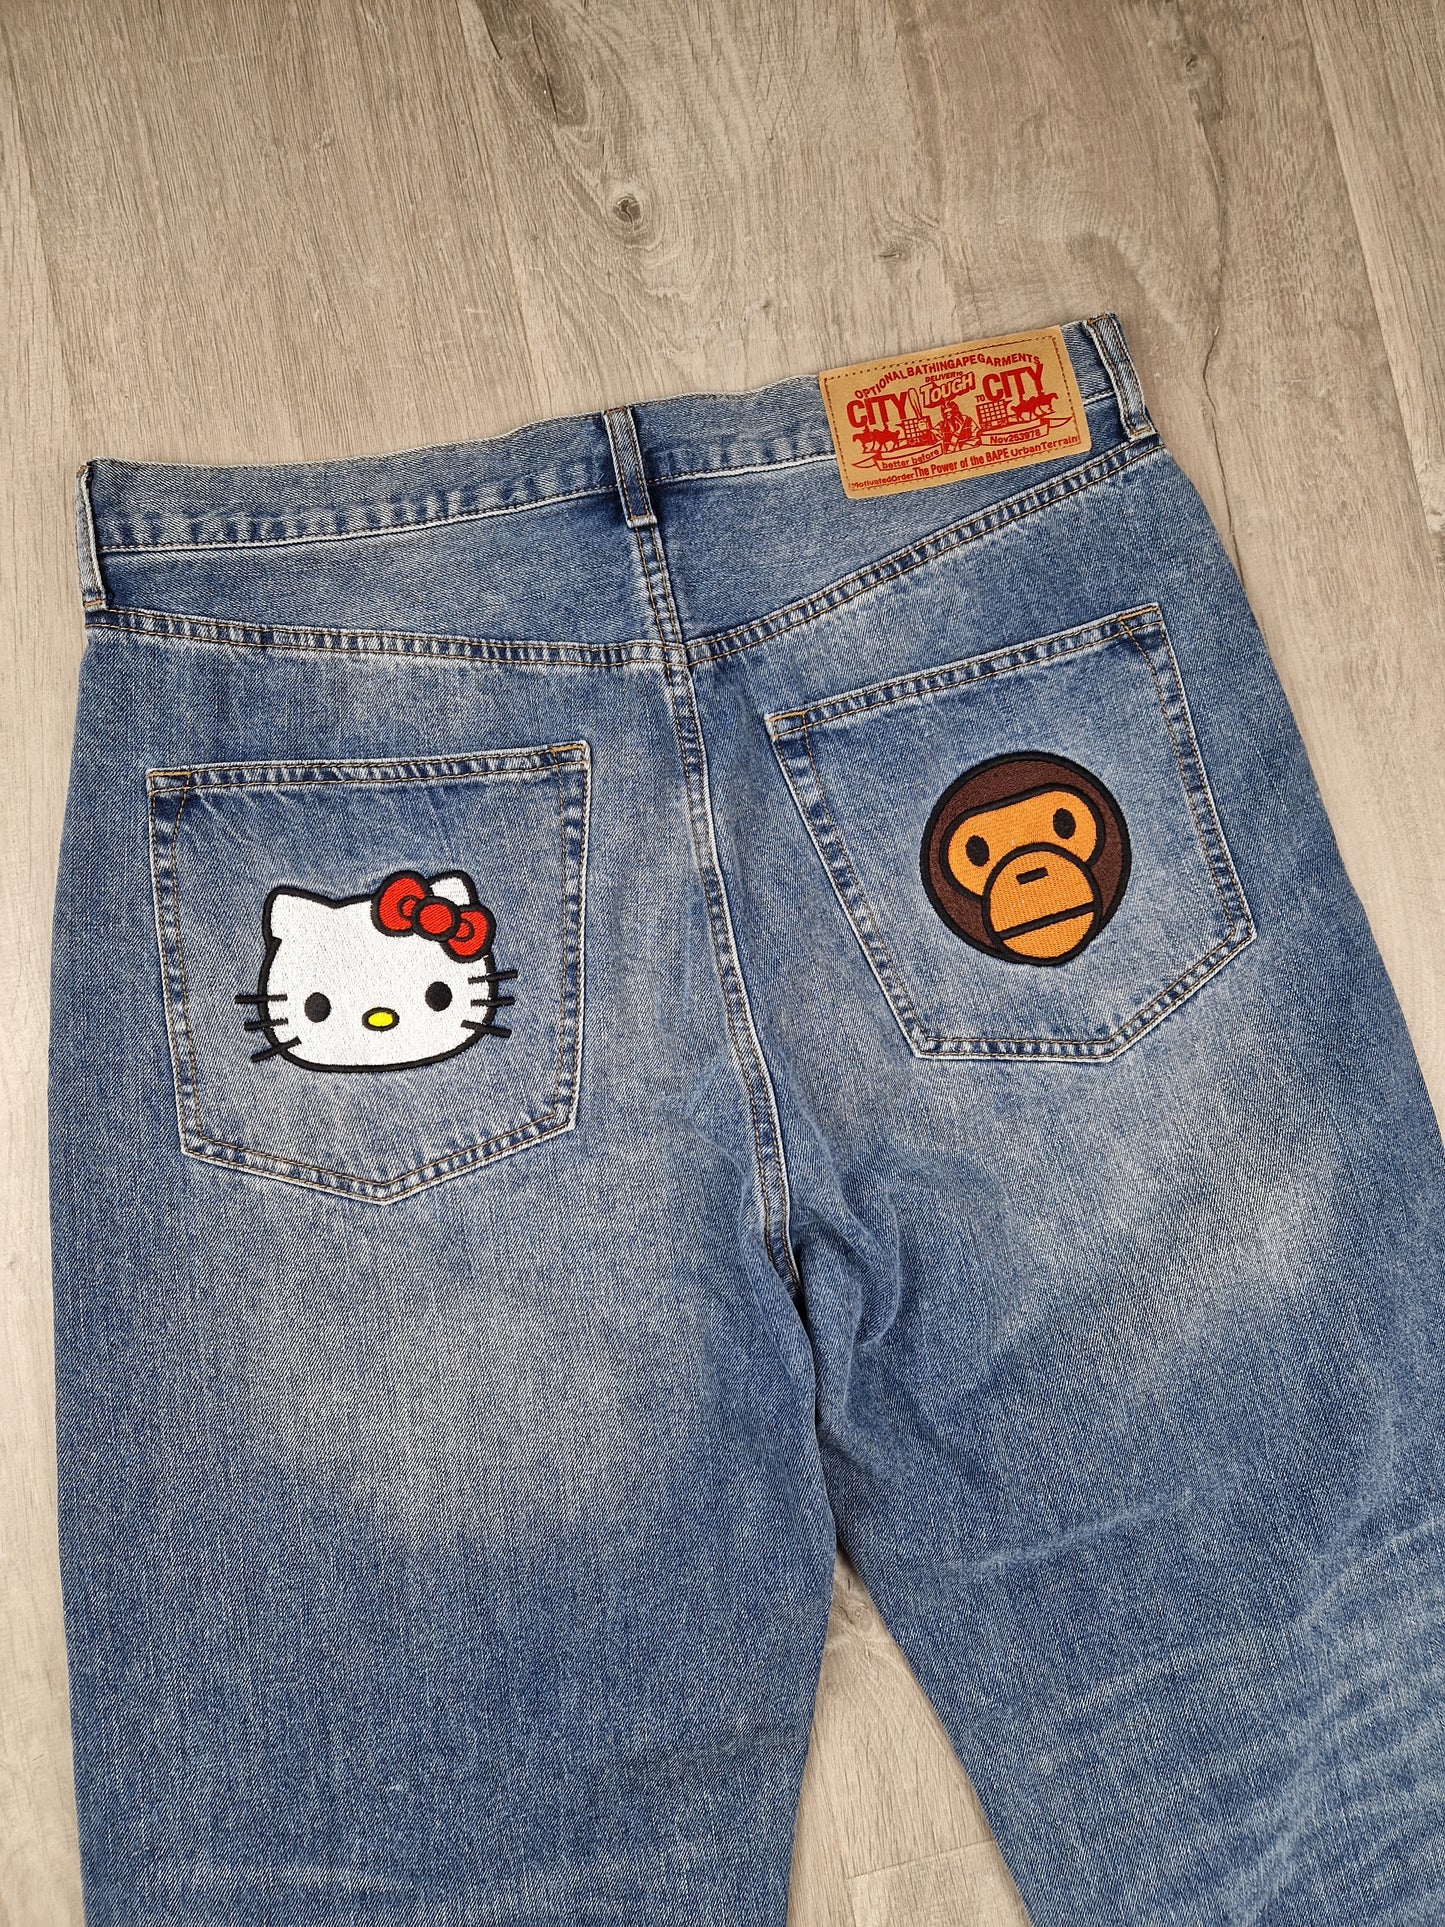 SuperRARE Bape x Sanrio Hello Kitty x Baby milo jeans (34×34)